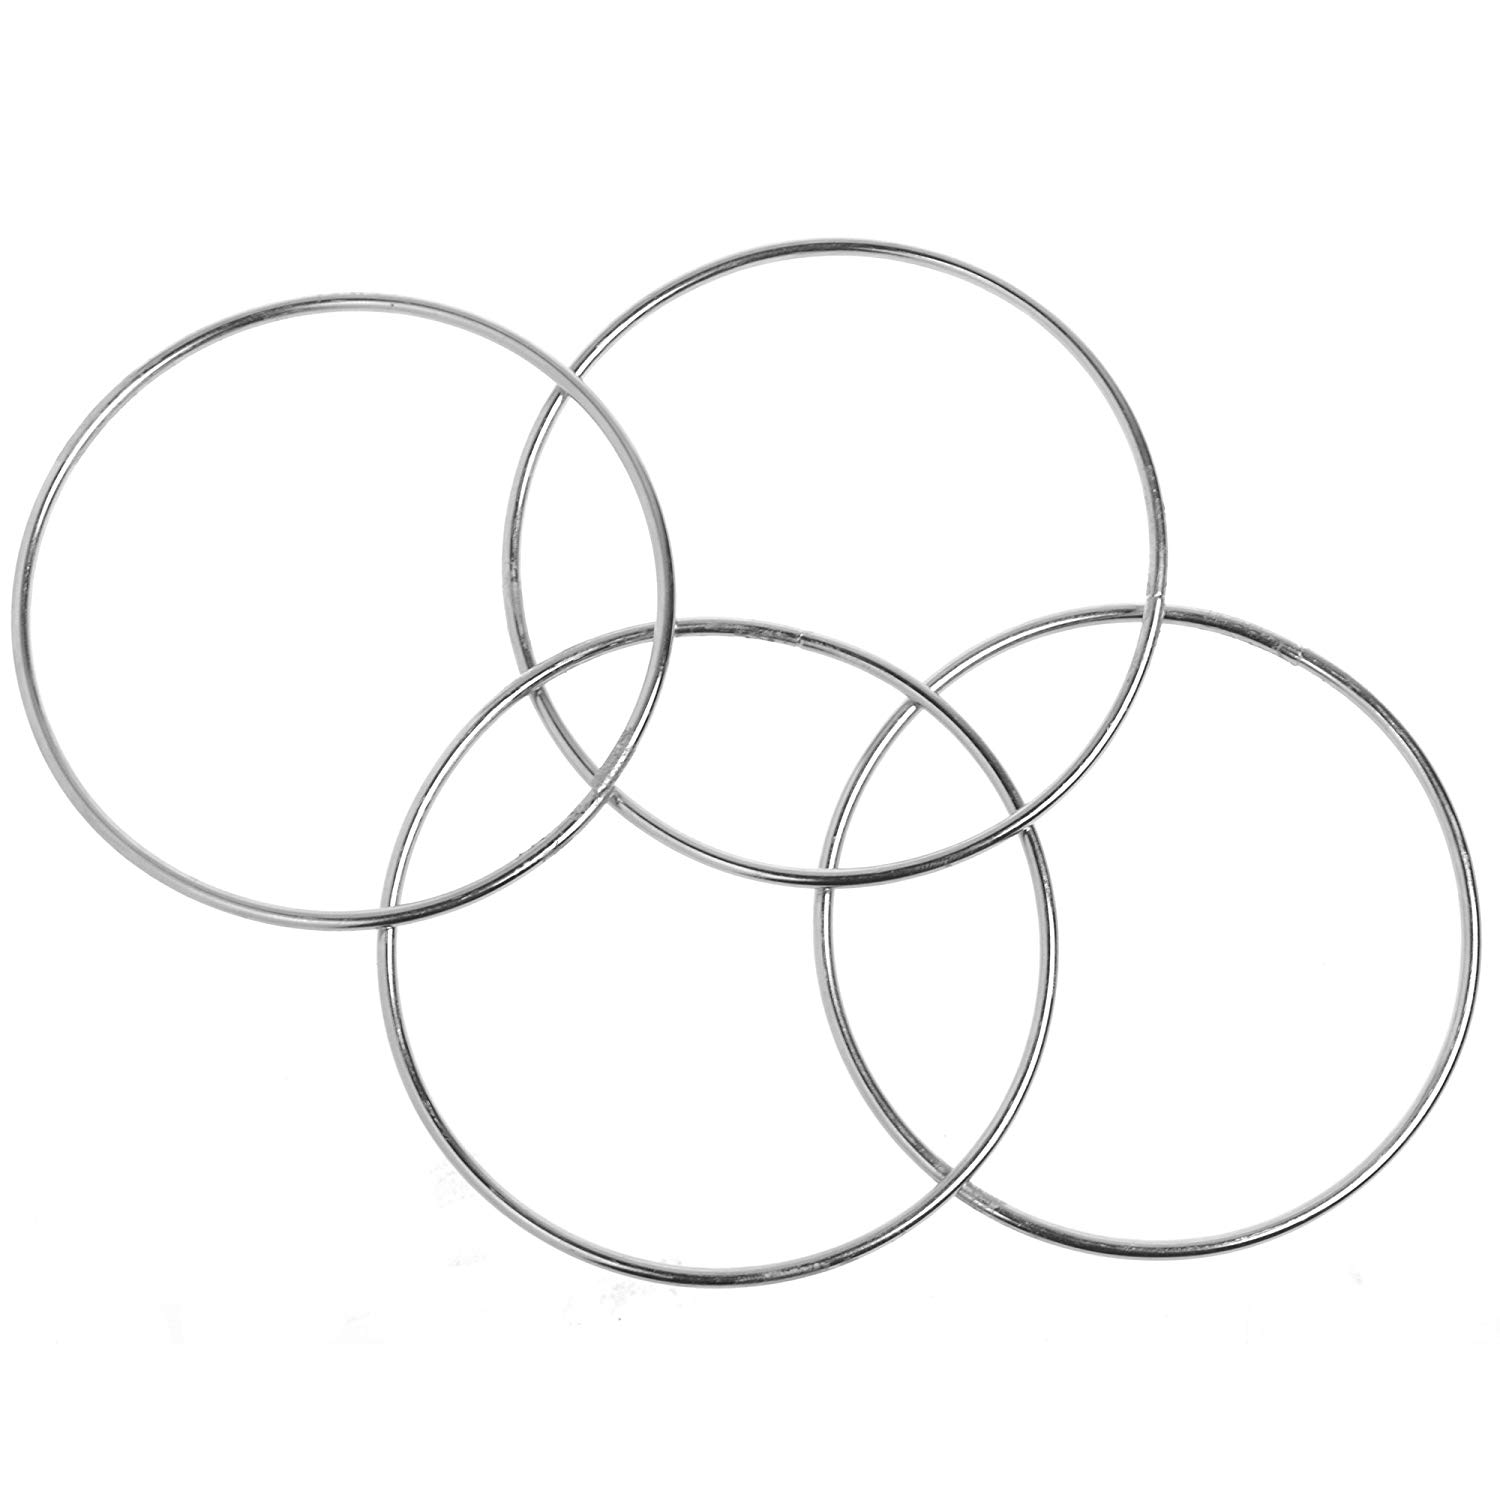 Linking Rings - 4 Ring Set - Magic Methods